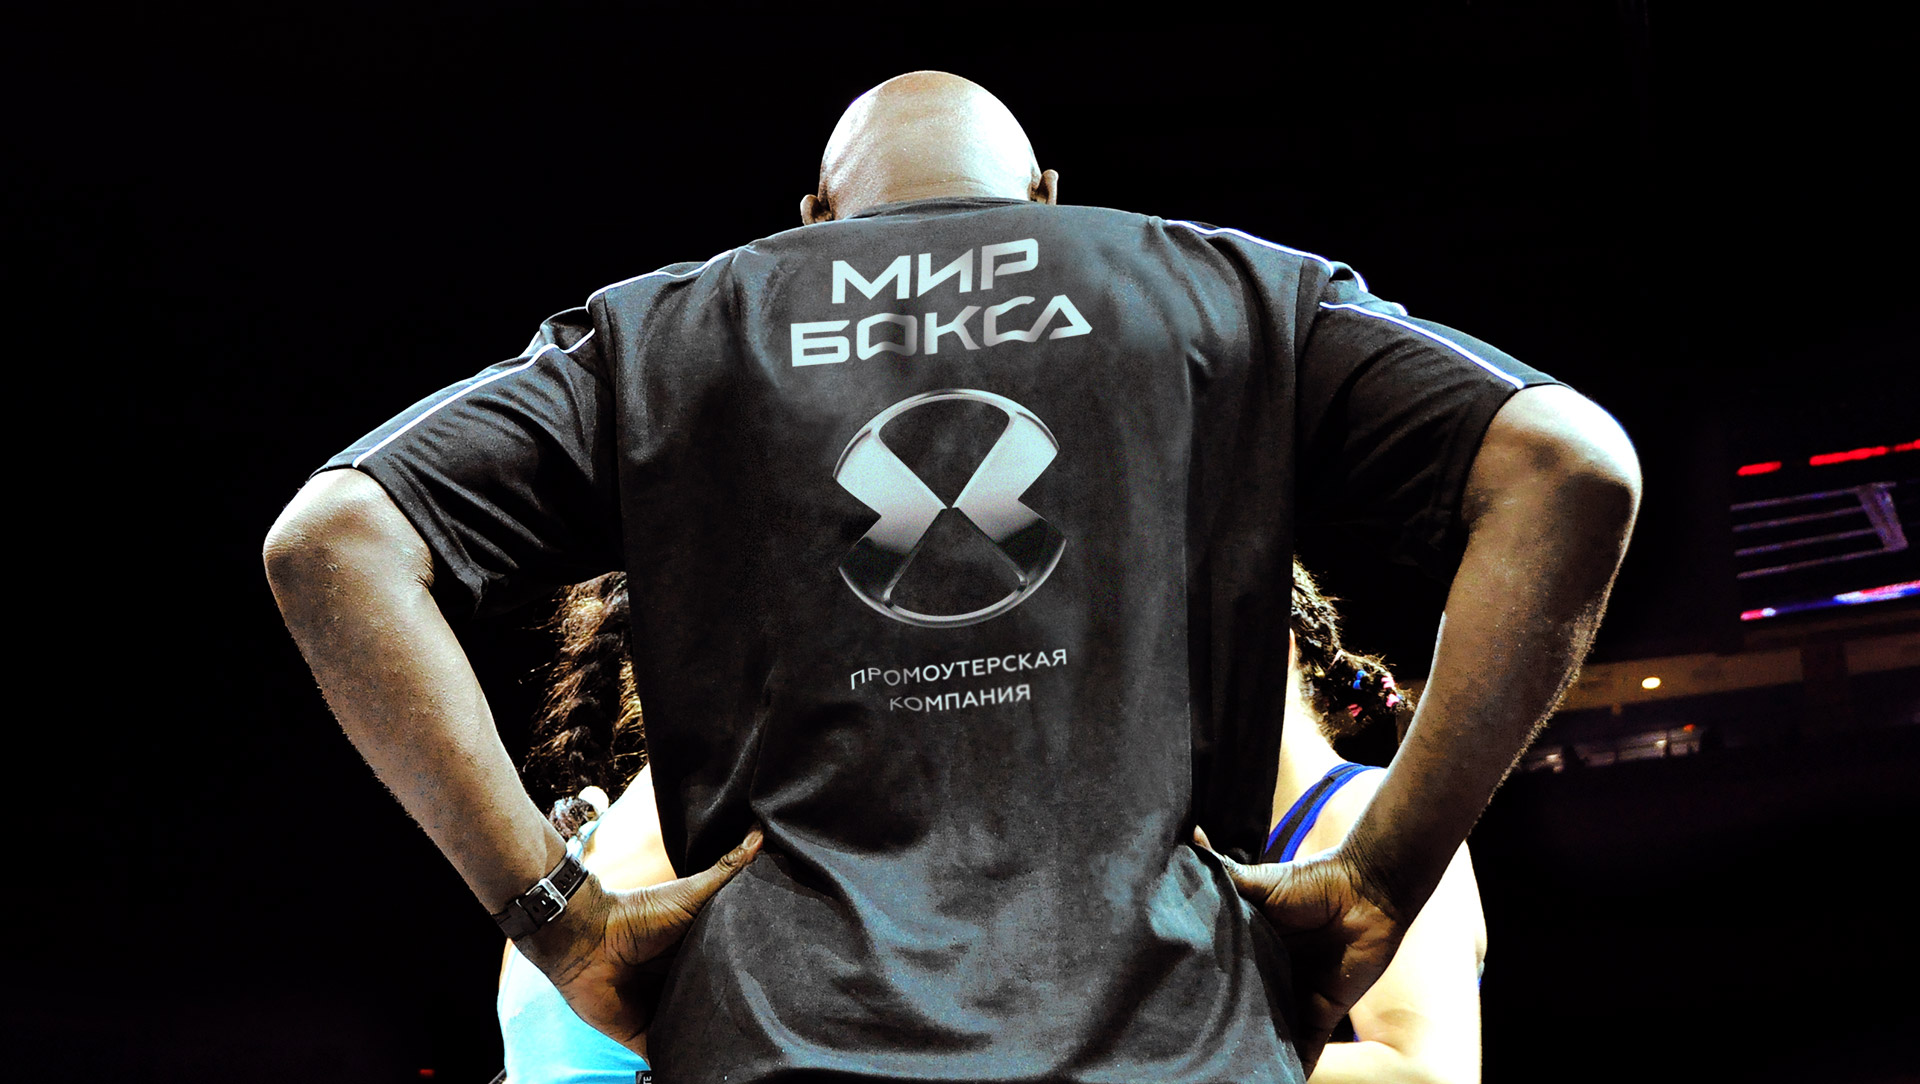 Российский боксёр подписал контракт с промоутерской компанией «Мир бокса» 